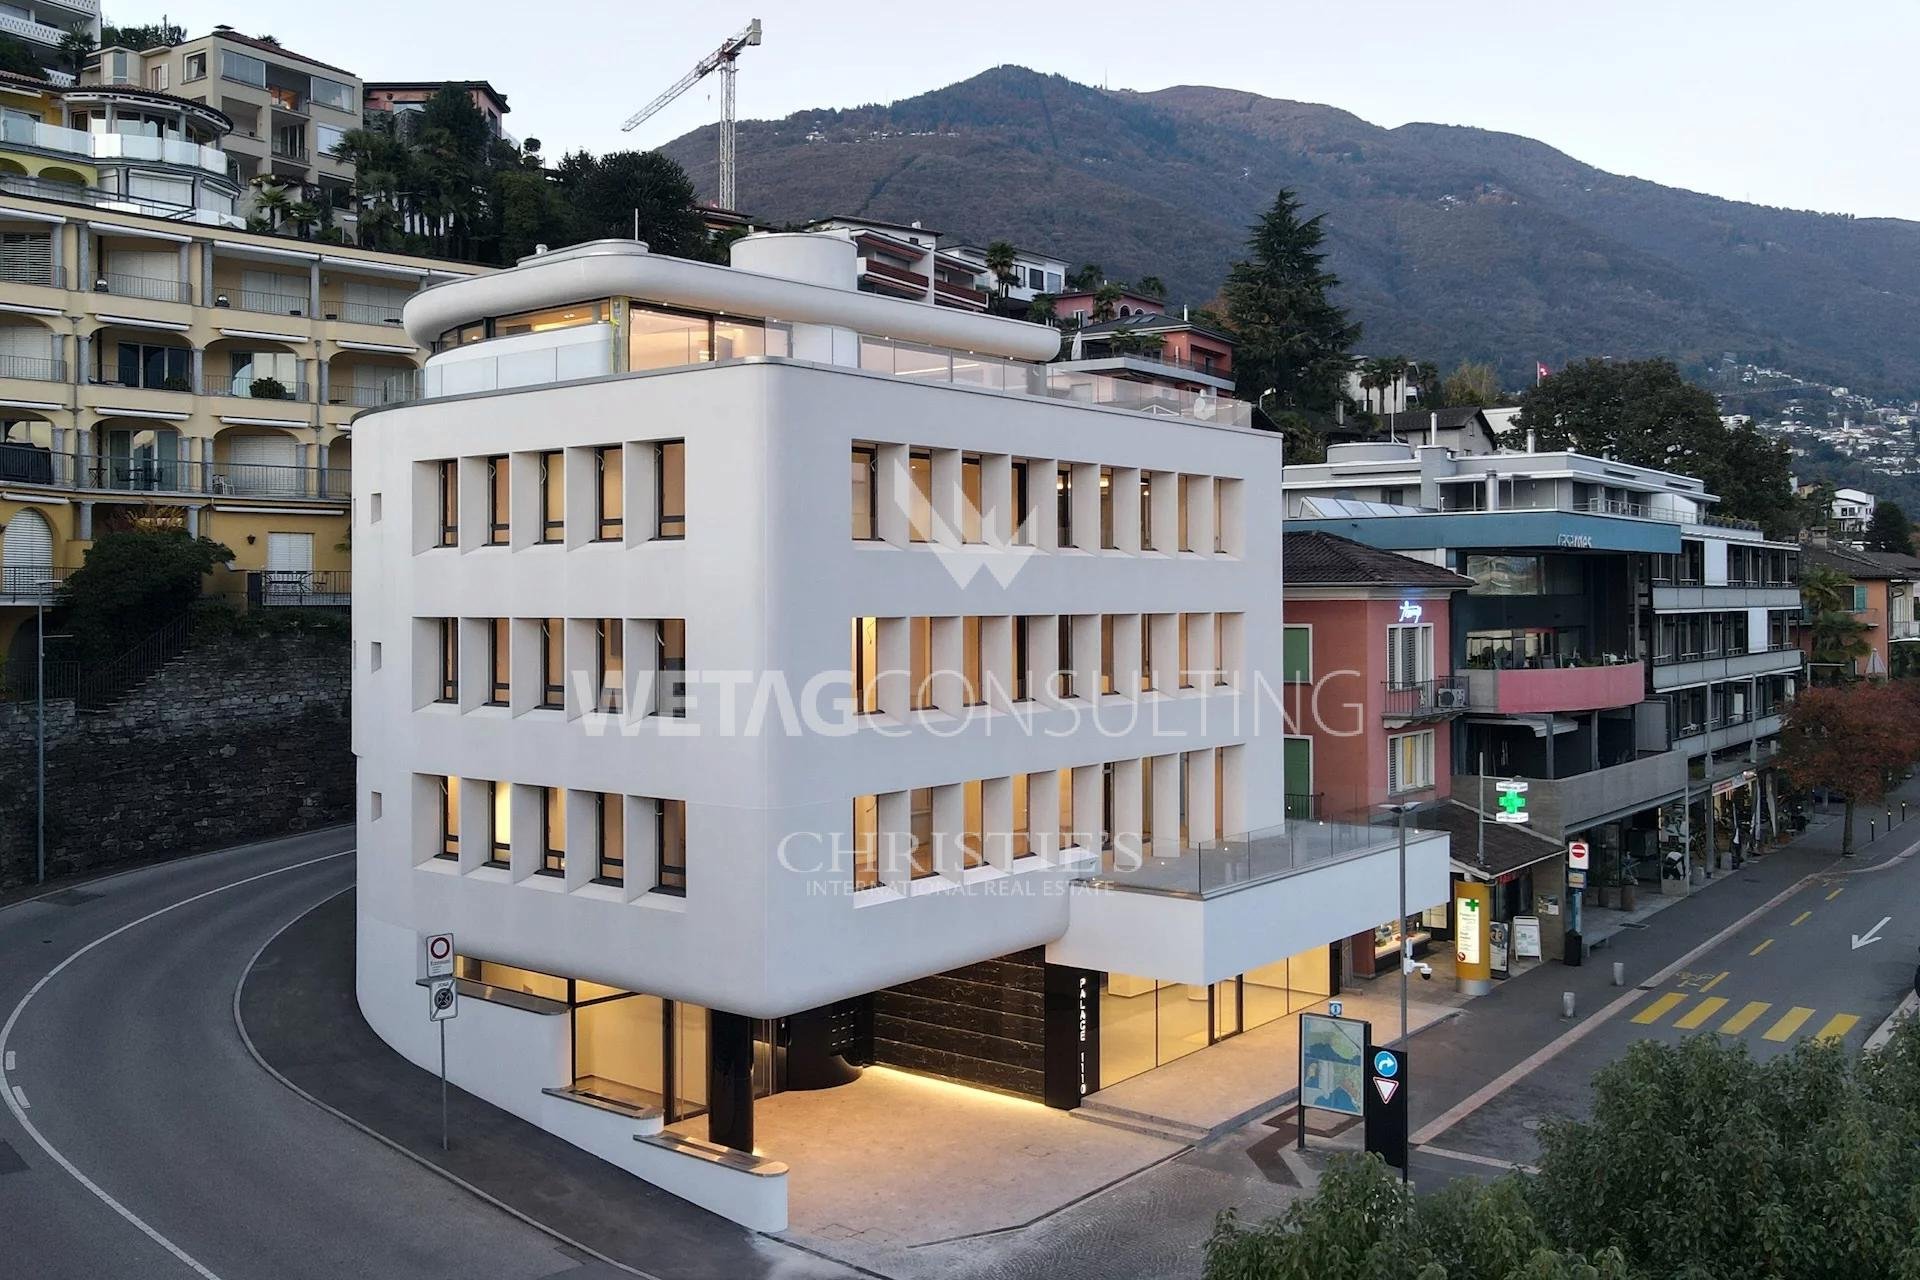 Portal Inmobiliario de Lujo en Ascona, presenta ático dúplex de lujo venta en Tesino, apartamento lujoso para comprar y piso exclusivo en venta en Locarno.